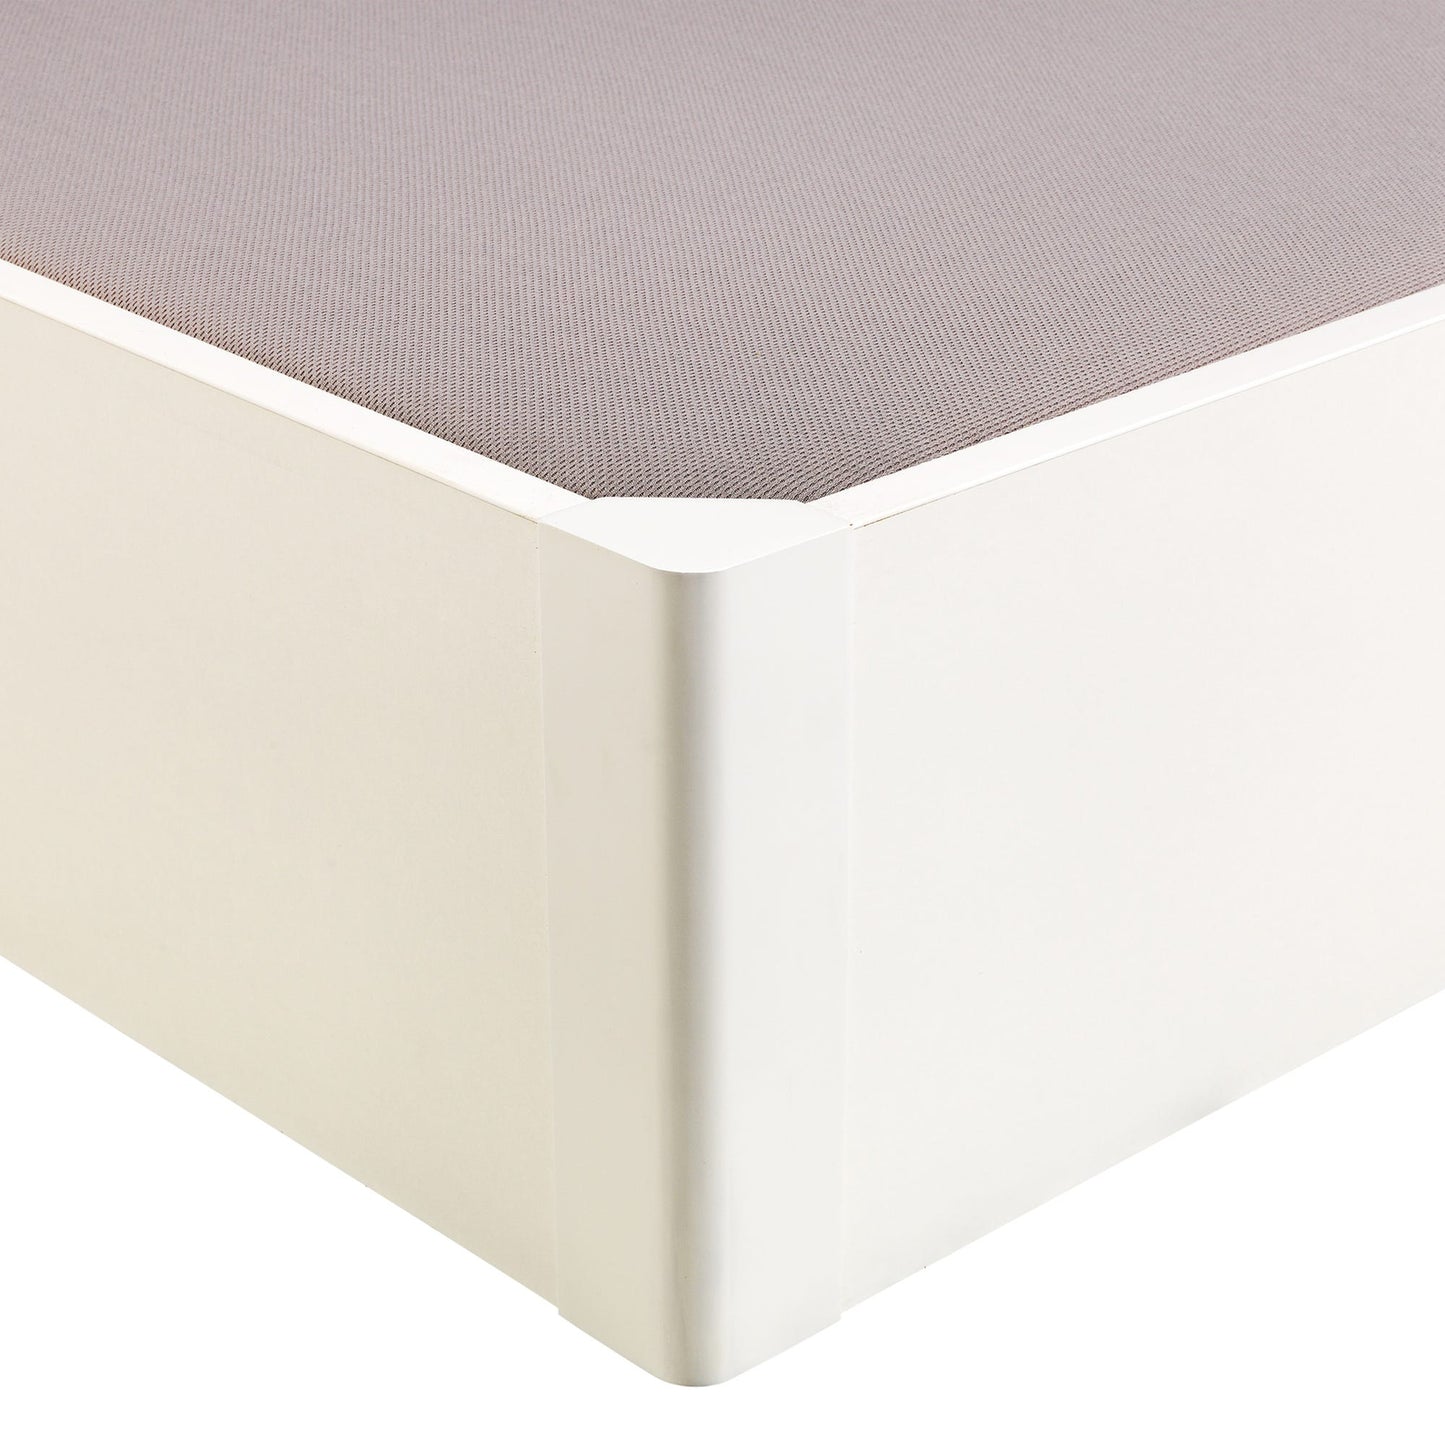 Canapé abatible de madera tapa única de color blanco - DESIGN - 150x200